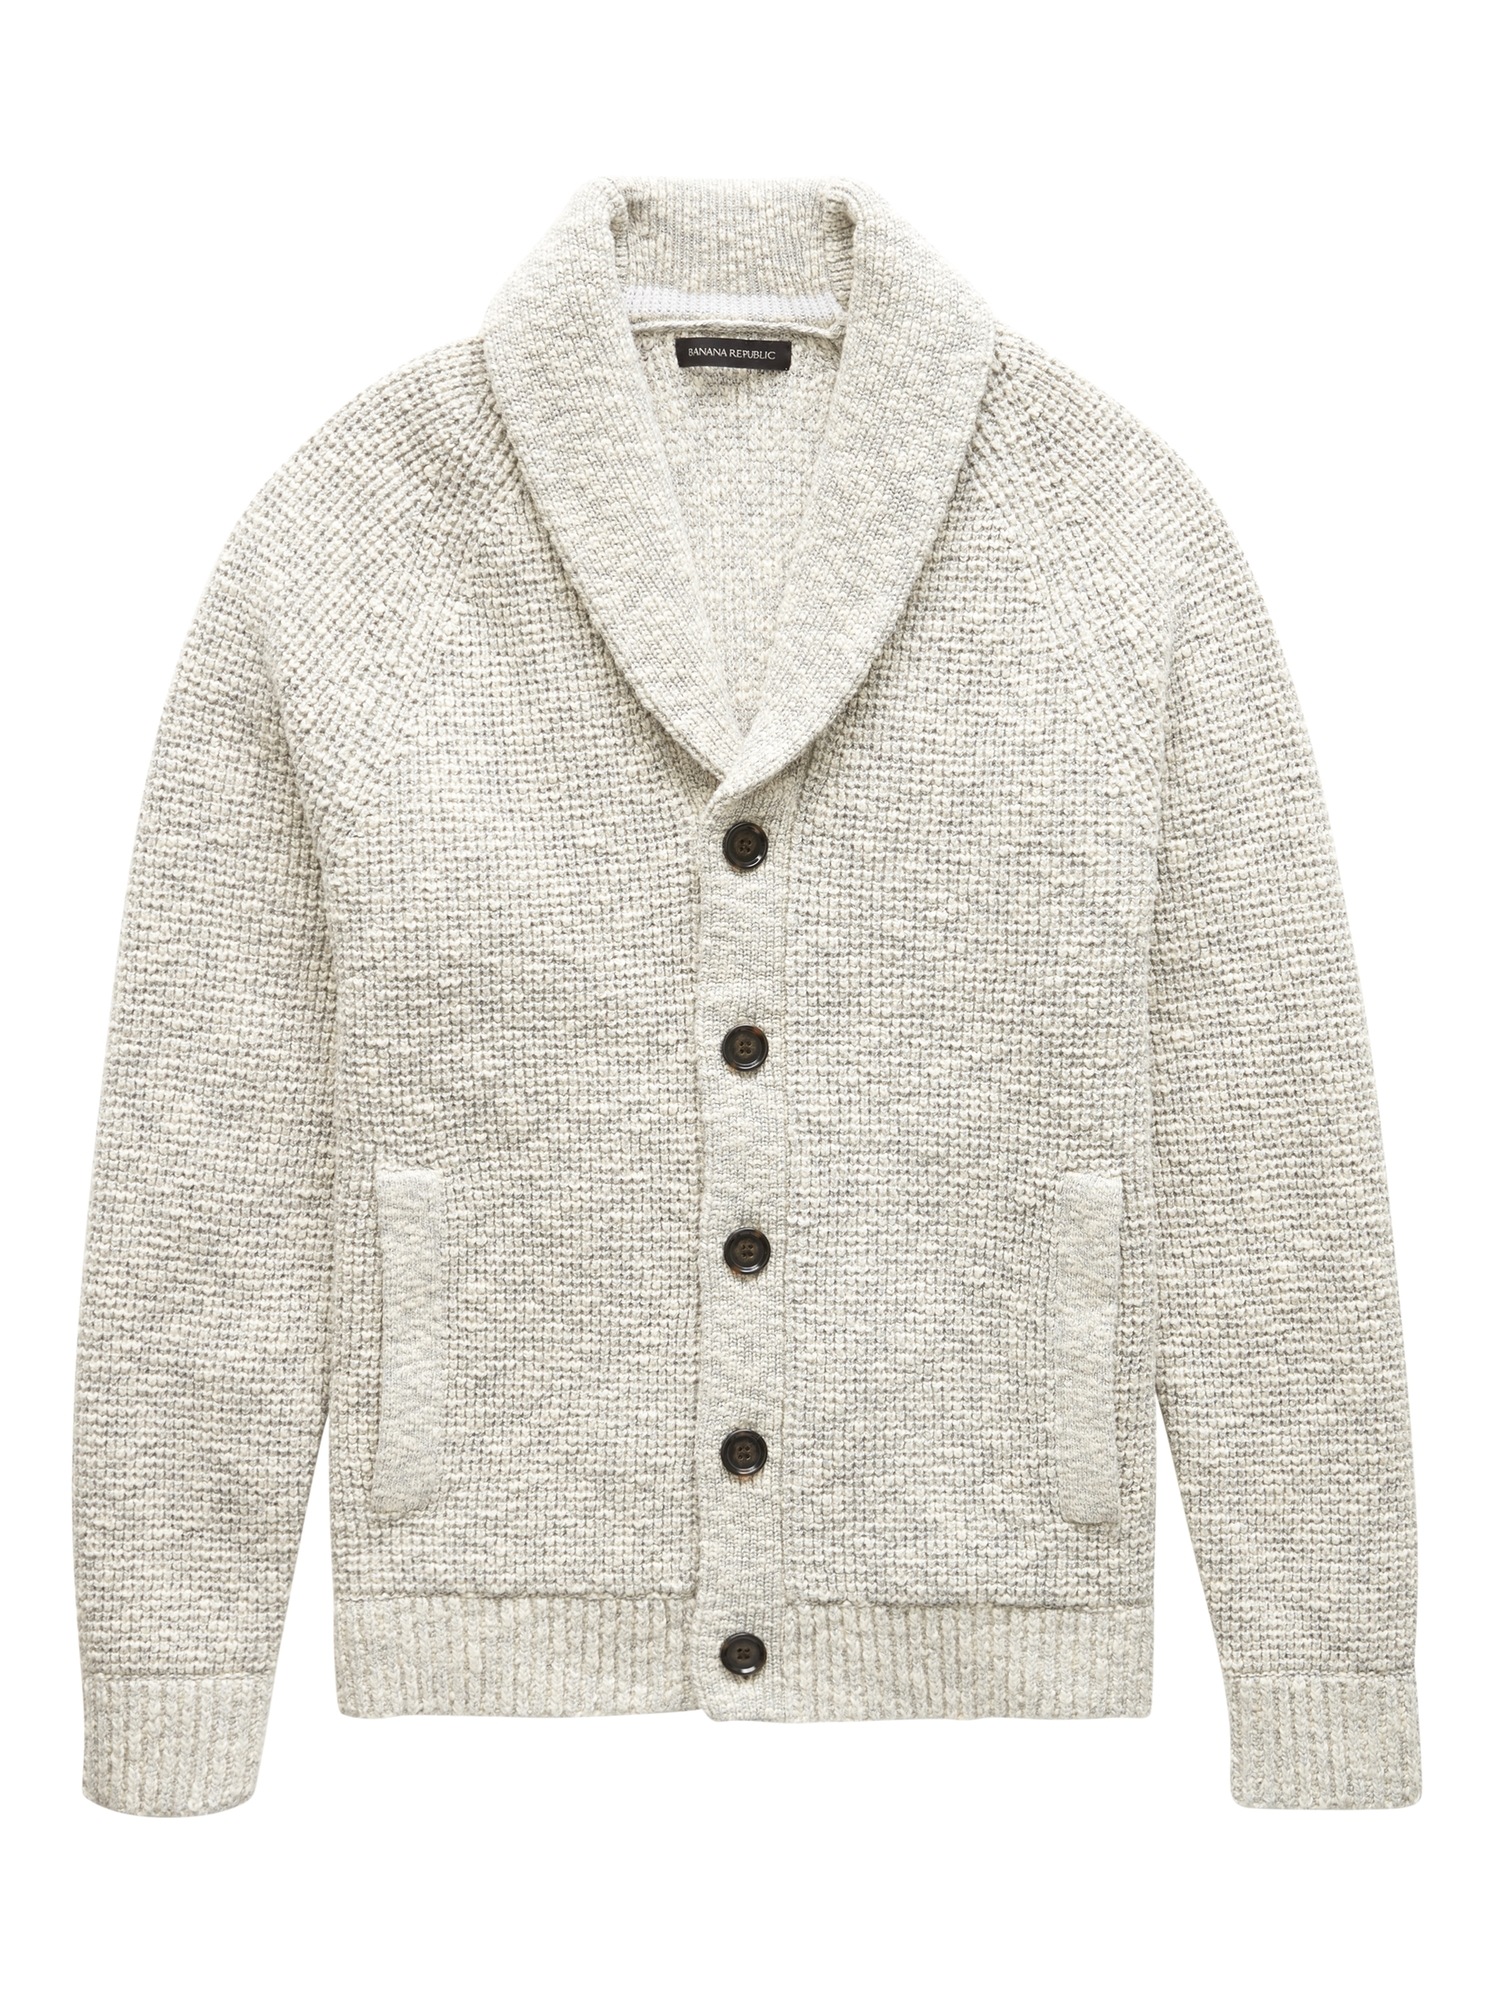 Cotton Waffle-Knit Shawl Cardigan Sweater